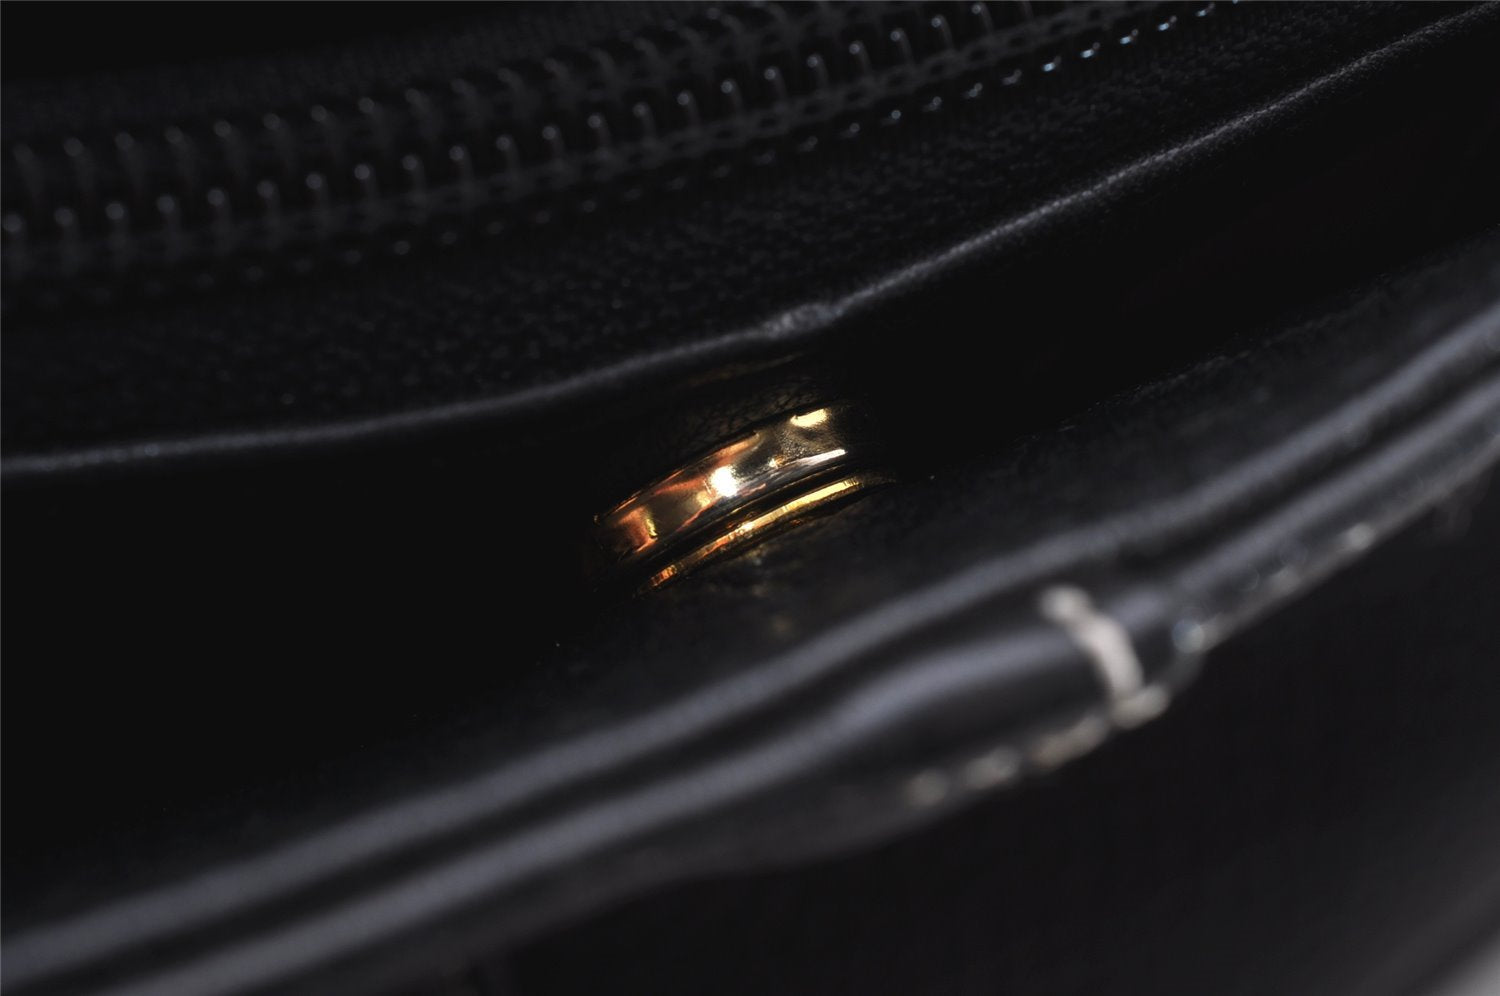 Authentic Burberrys Vintage Leather Shoulder Hand Bag Purse Black 0560J